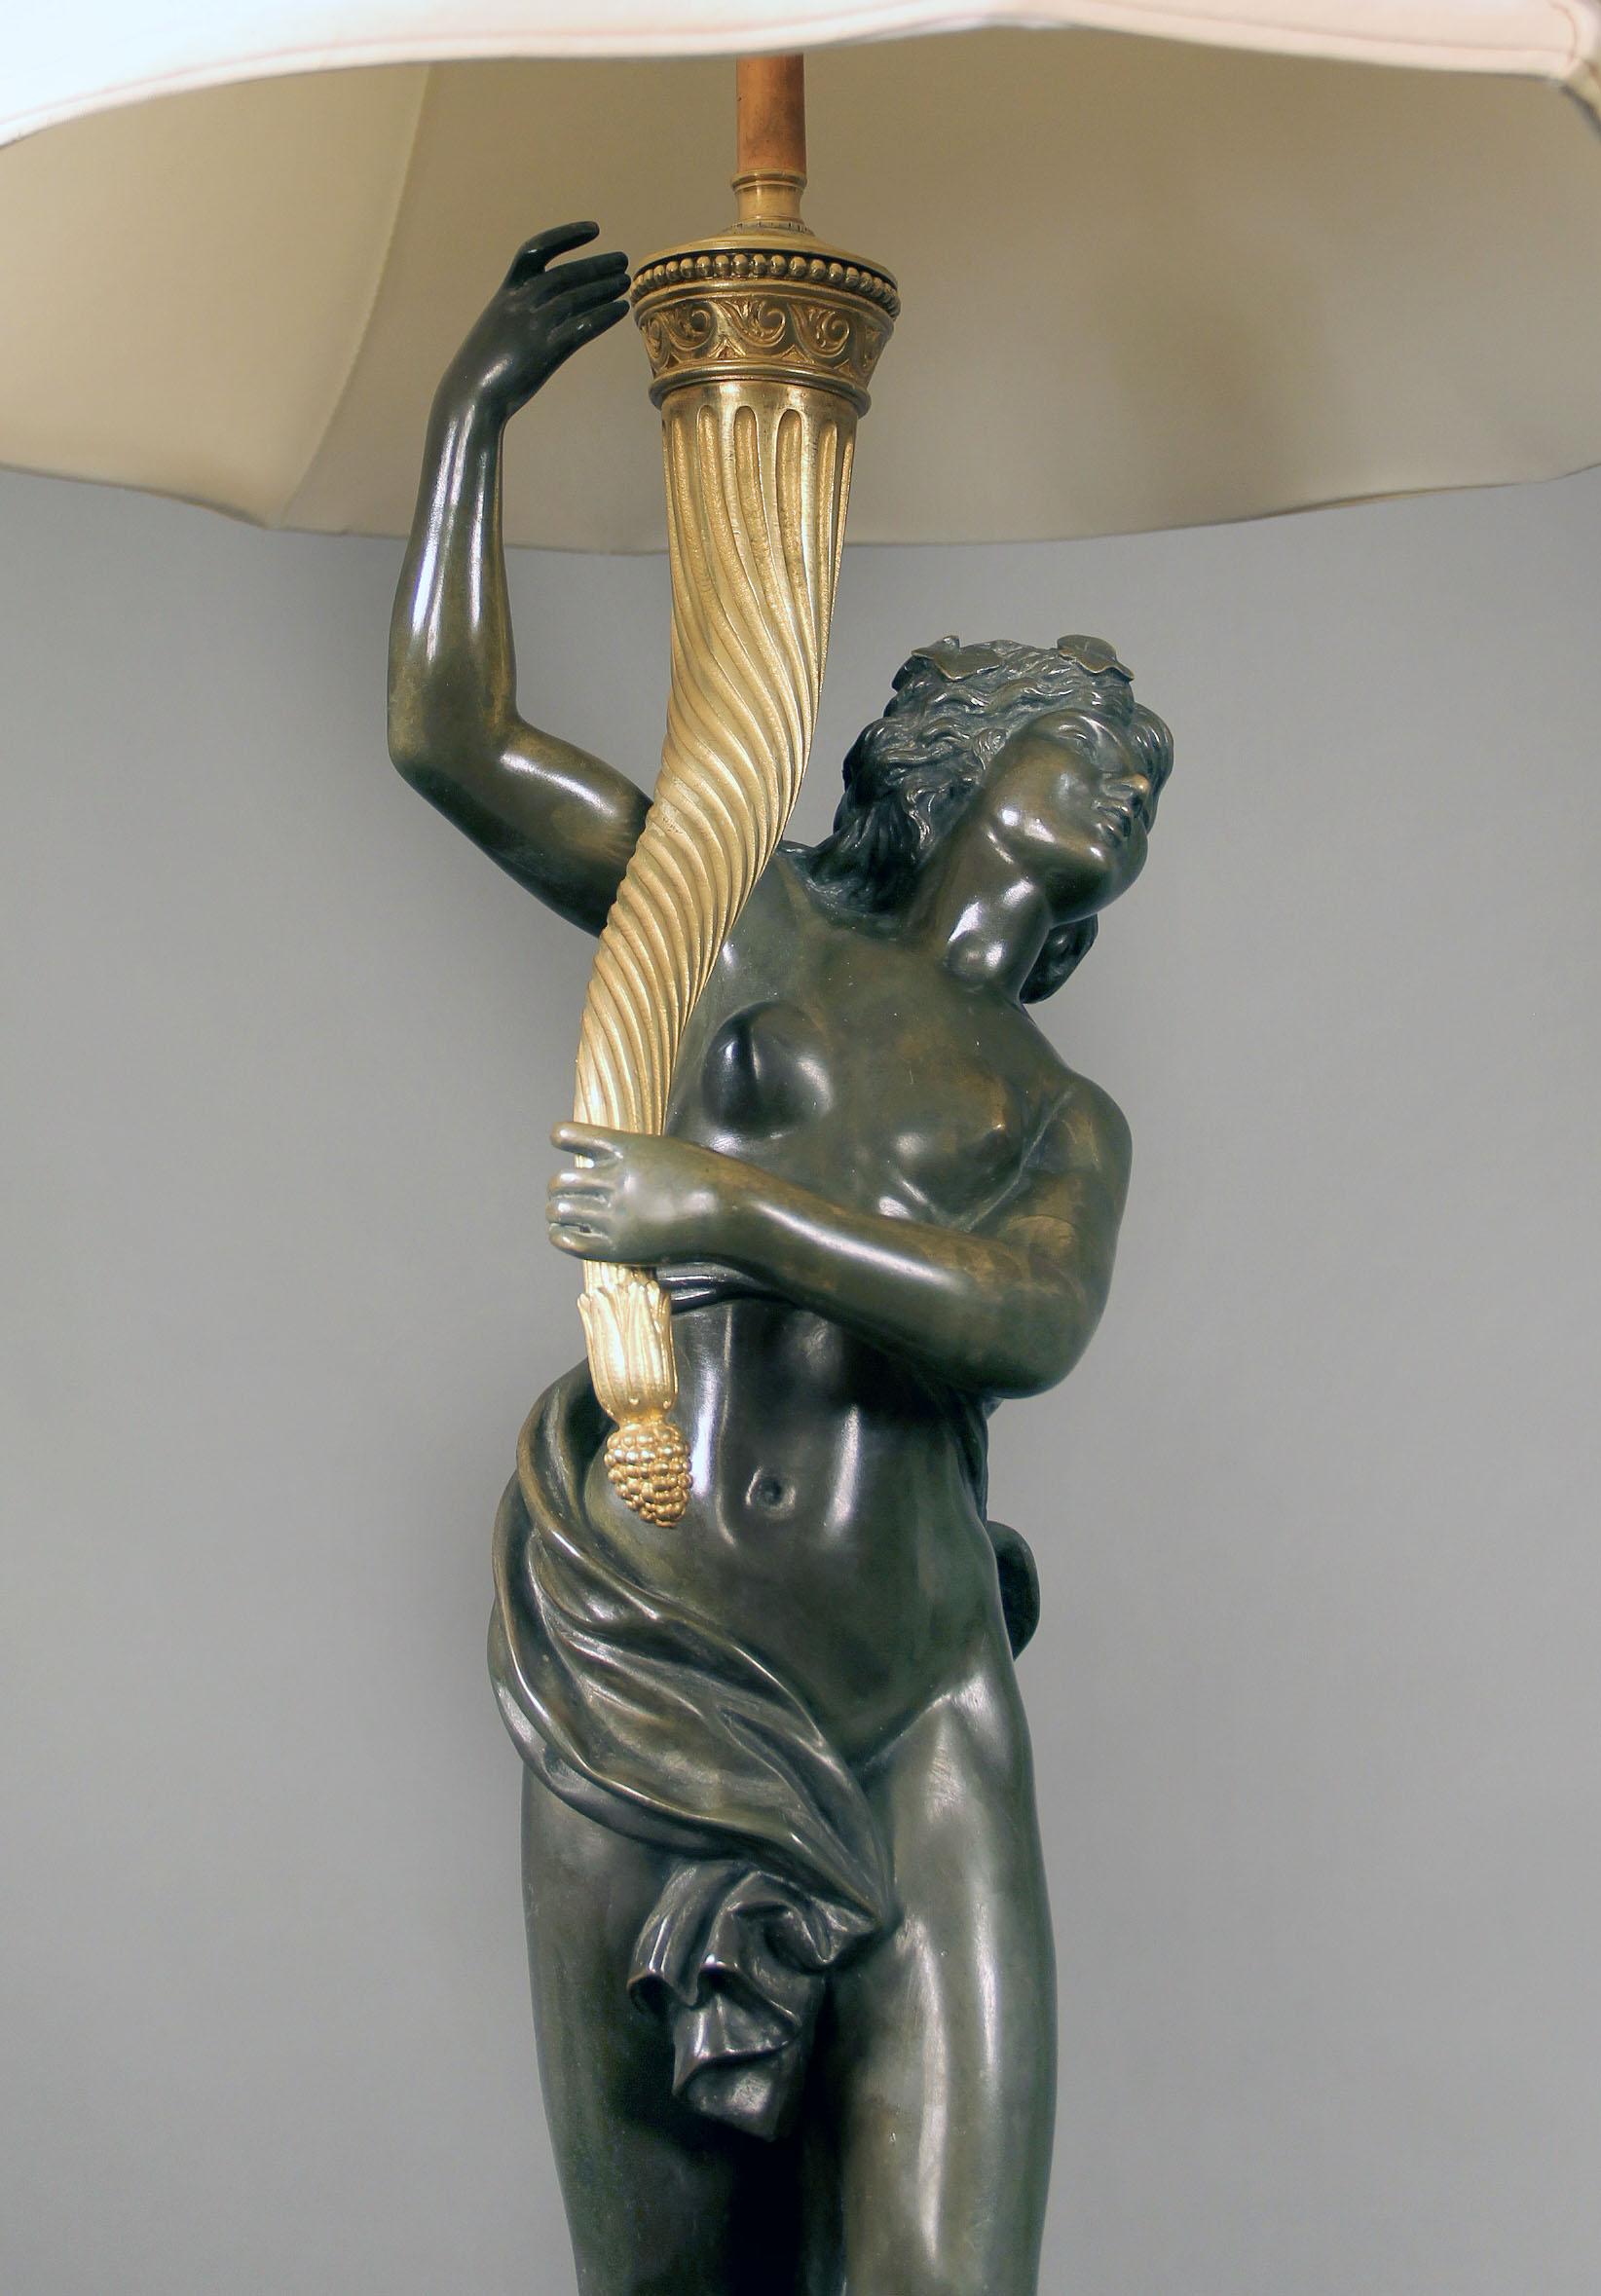 Lampe en bronze à deux tons de la fin du XIXe siècle

Après Clodion

Figure féminine issue d'une bacchanale, tenant une lampe corne d'abondance, sur un socle circulaire en marbre monté en bronze. 

Claude Michael Clodion, [1738-1814], est le